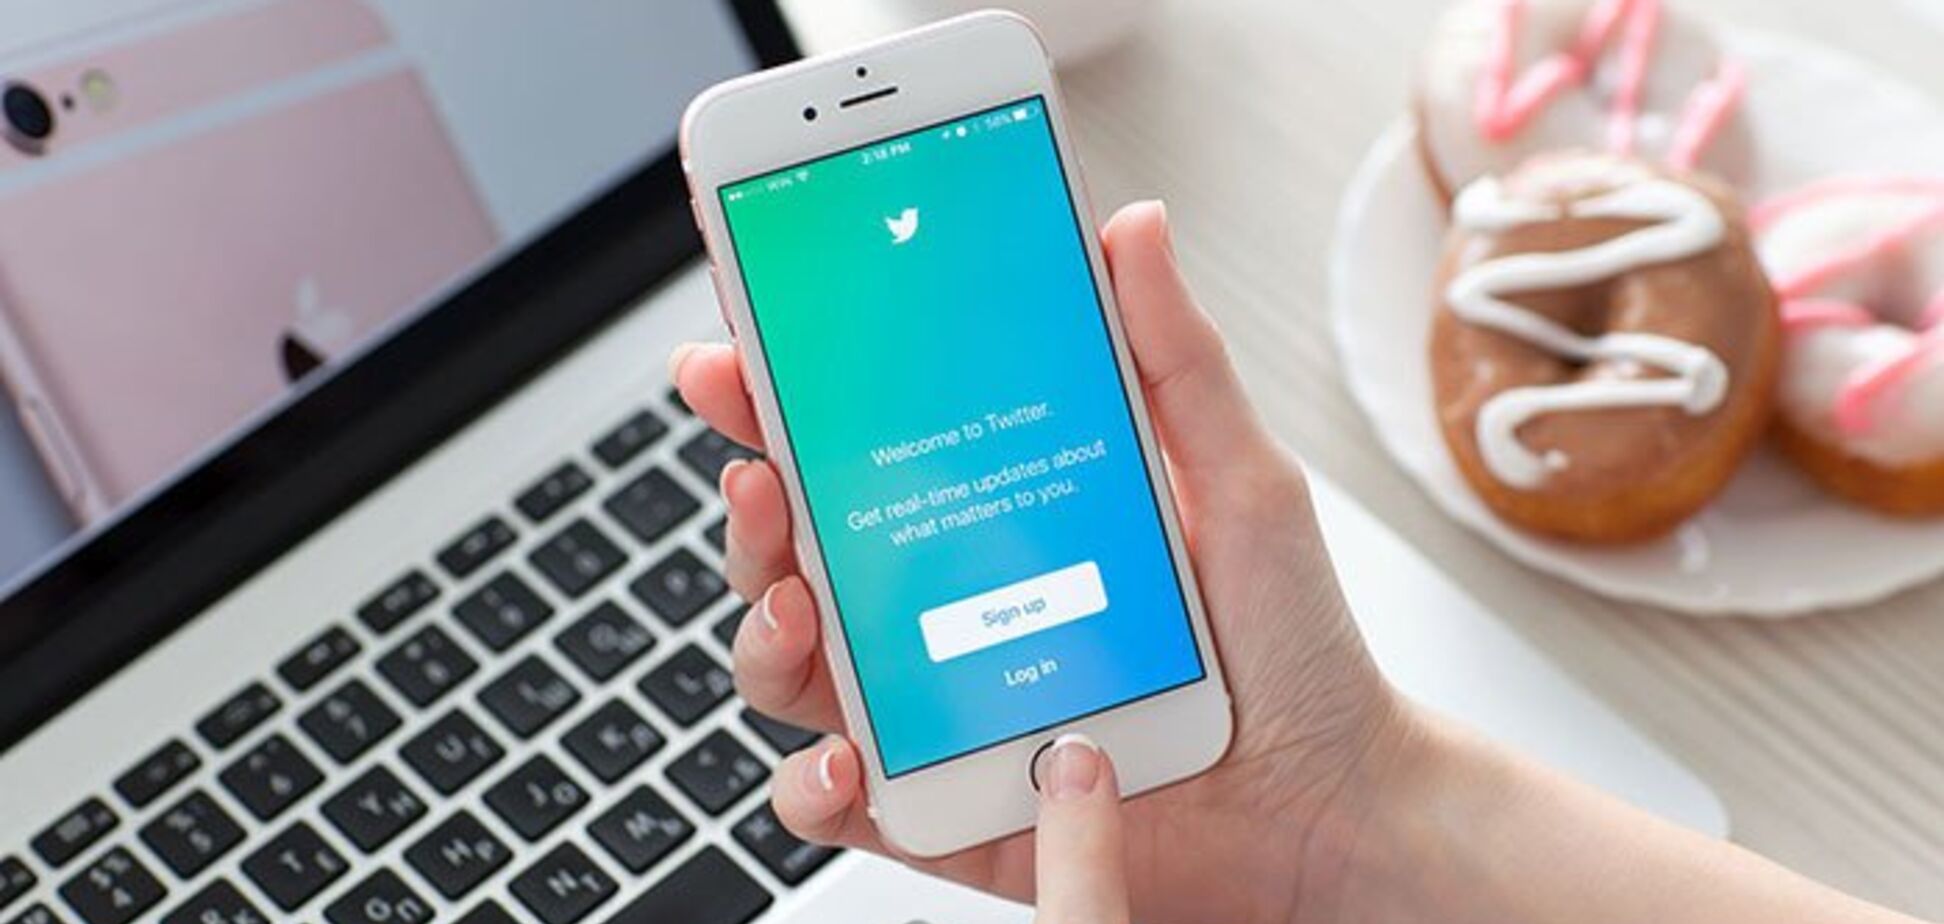 Дерзкий пранк в Twitter блокирует тысячи аккаунтов: подробности